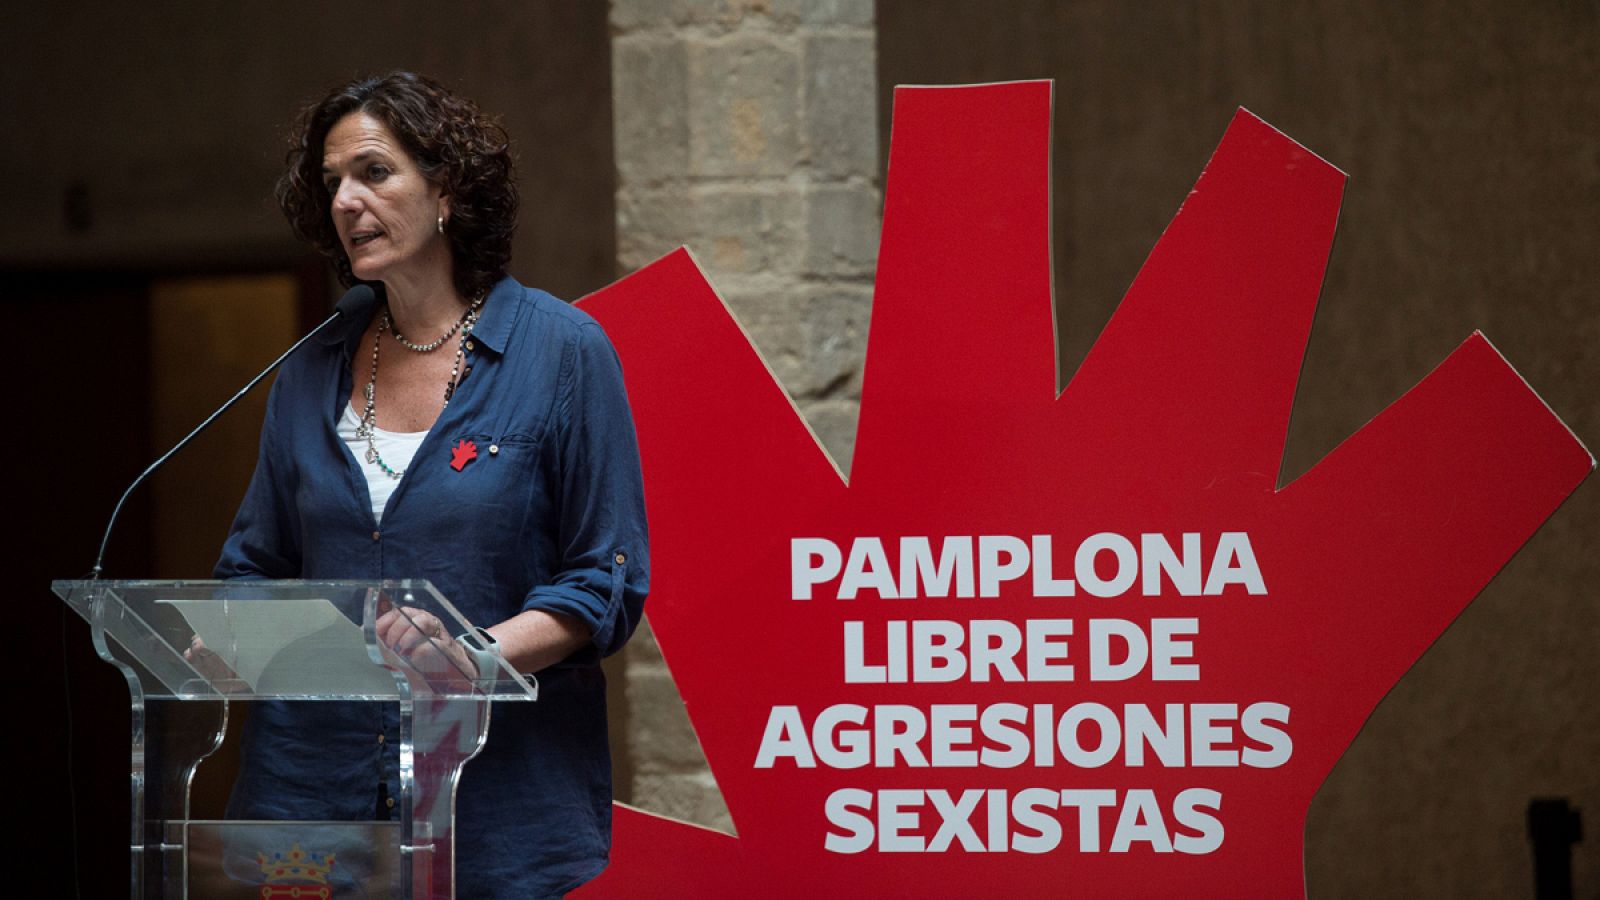 La concejala de Seguridad Ciudadana de Pamplona presenta la campaña contra las agresiones sexistas